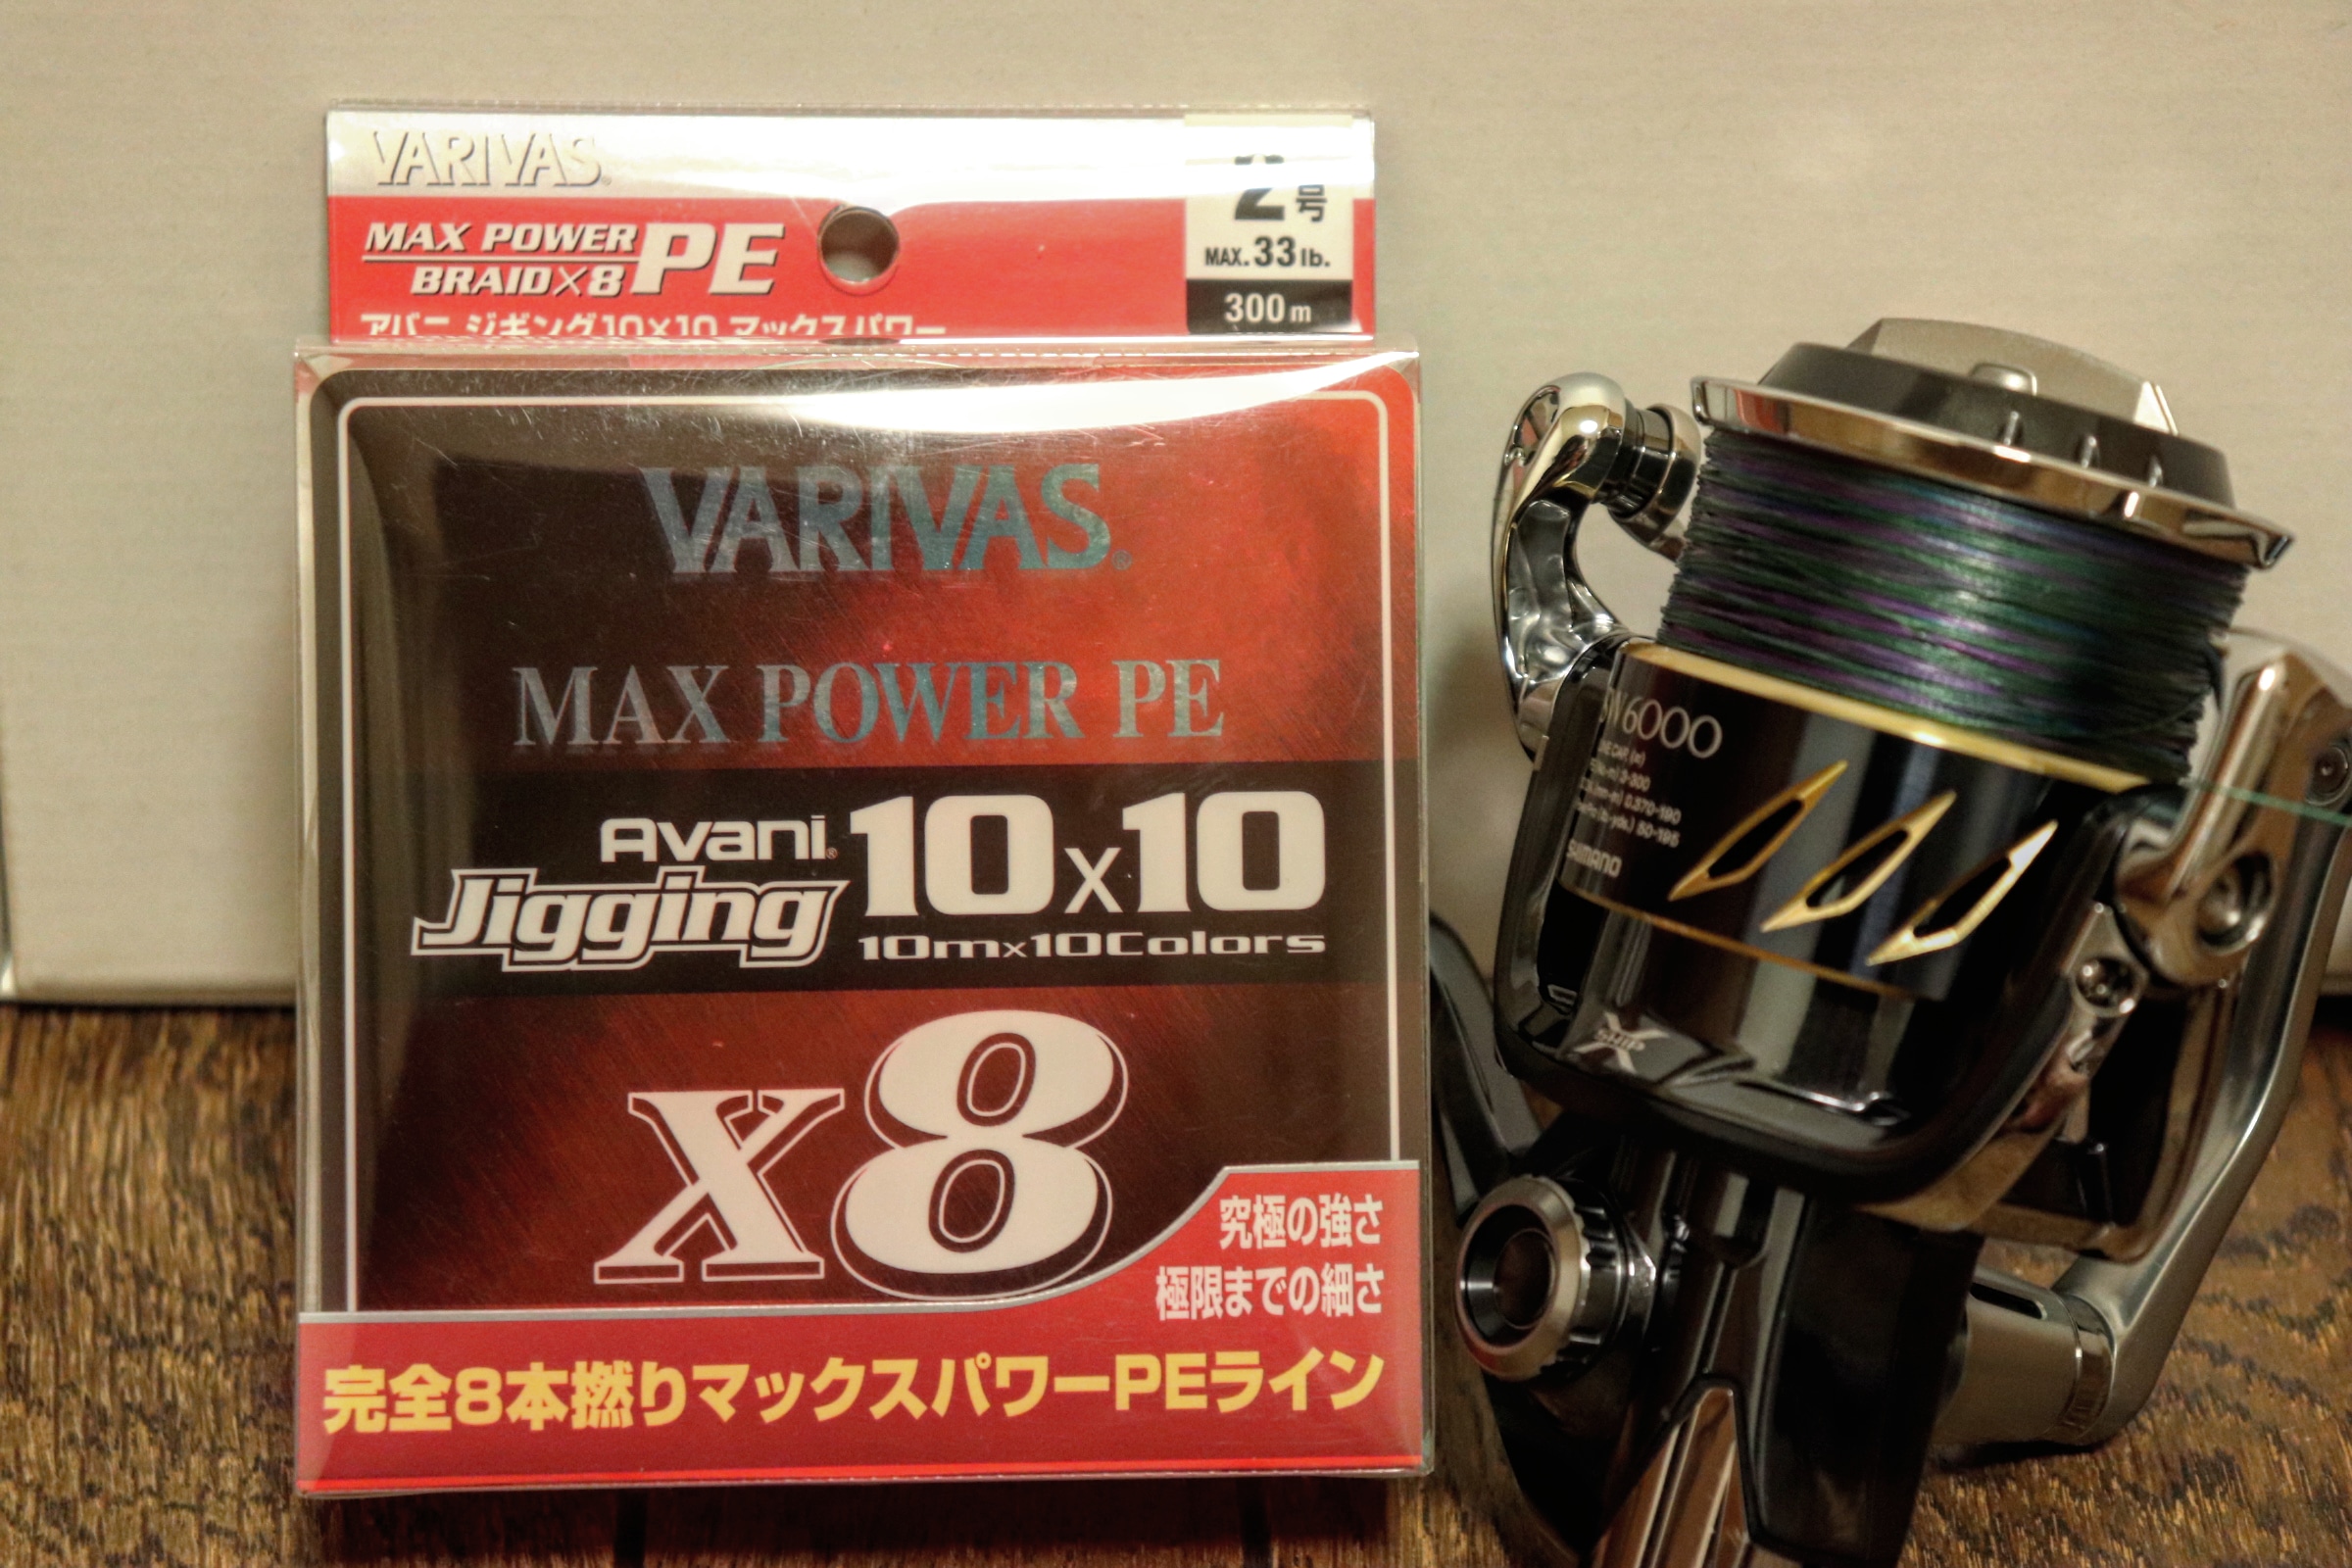 細く滑らかで強いPEライン「VARIVAS アバニ ジギング10×10 マックスパワーPE X8」を使ってます！ - The firstone